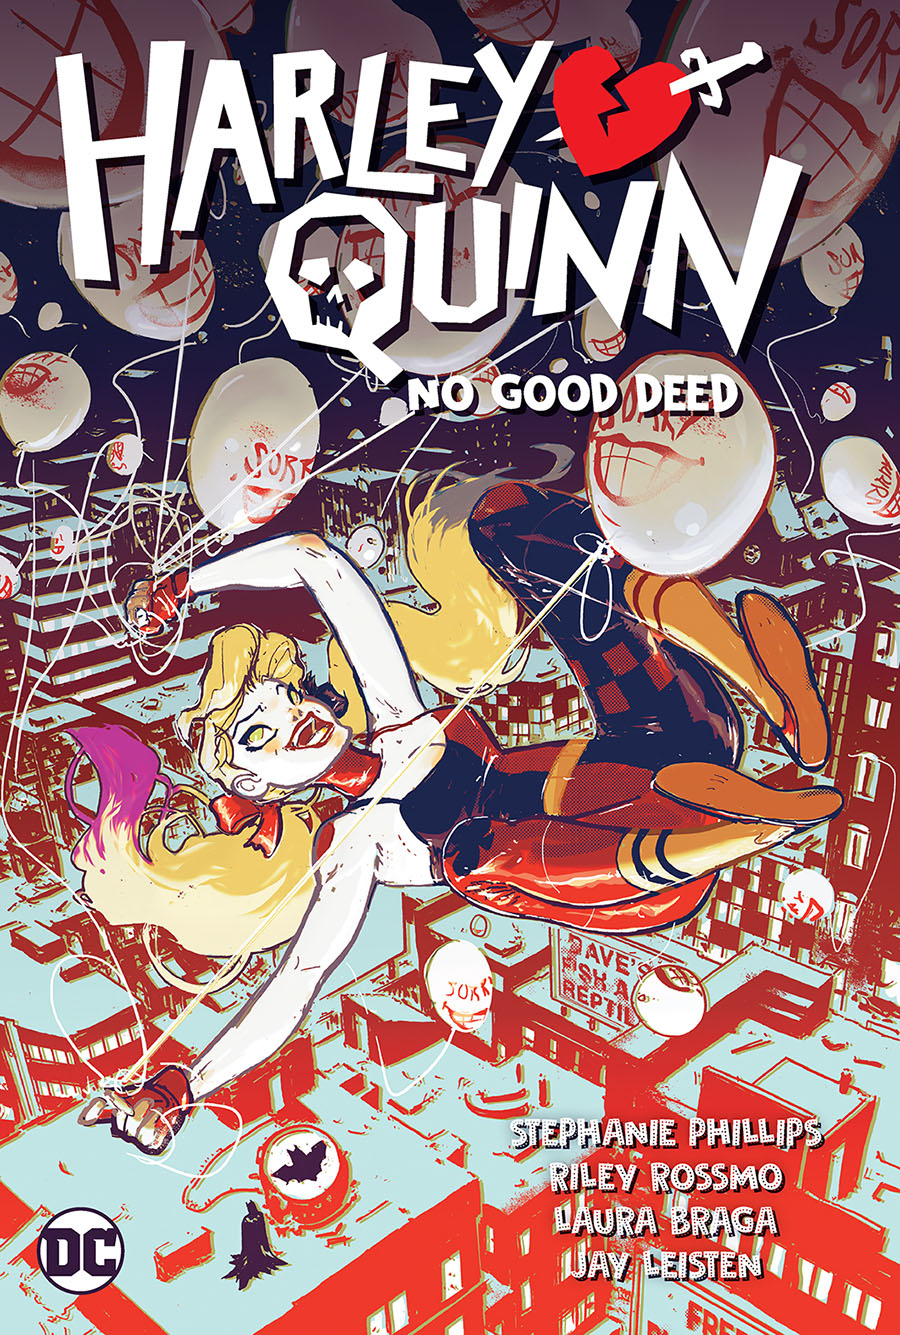 Harley Quinn (2021) Vol 1 No Good Deed TP